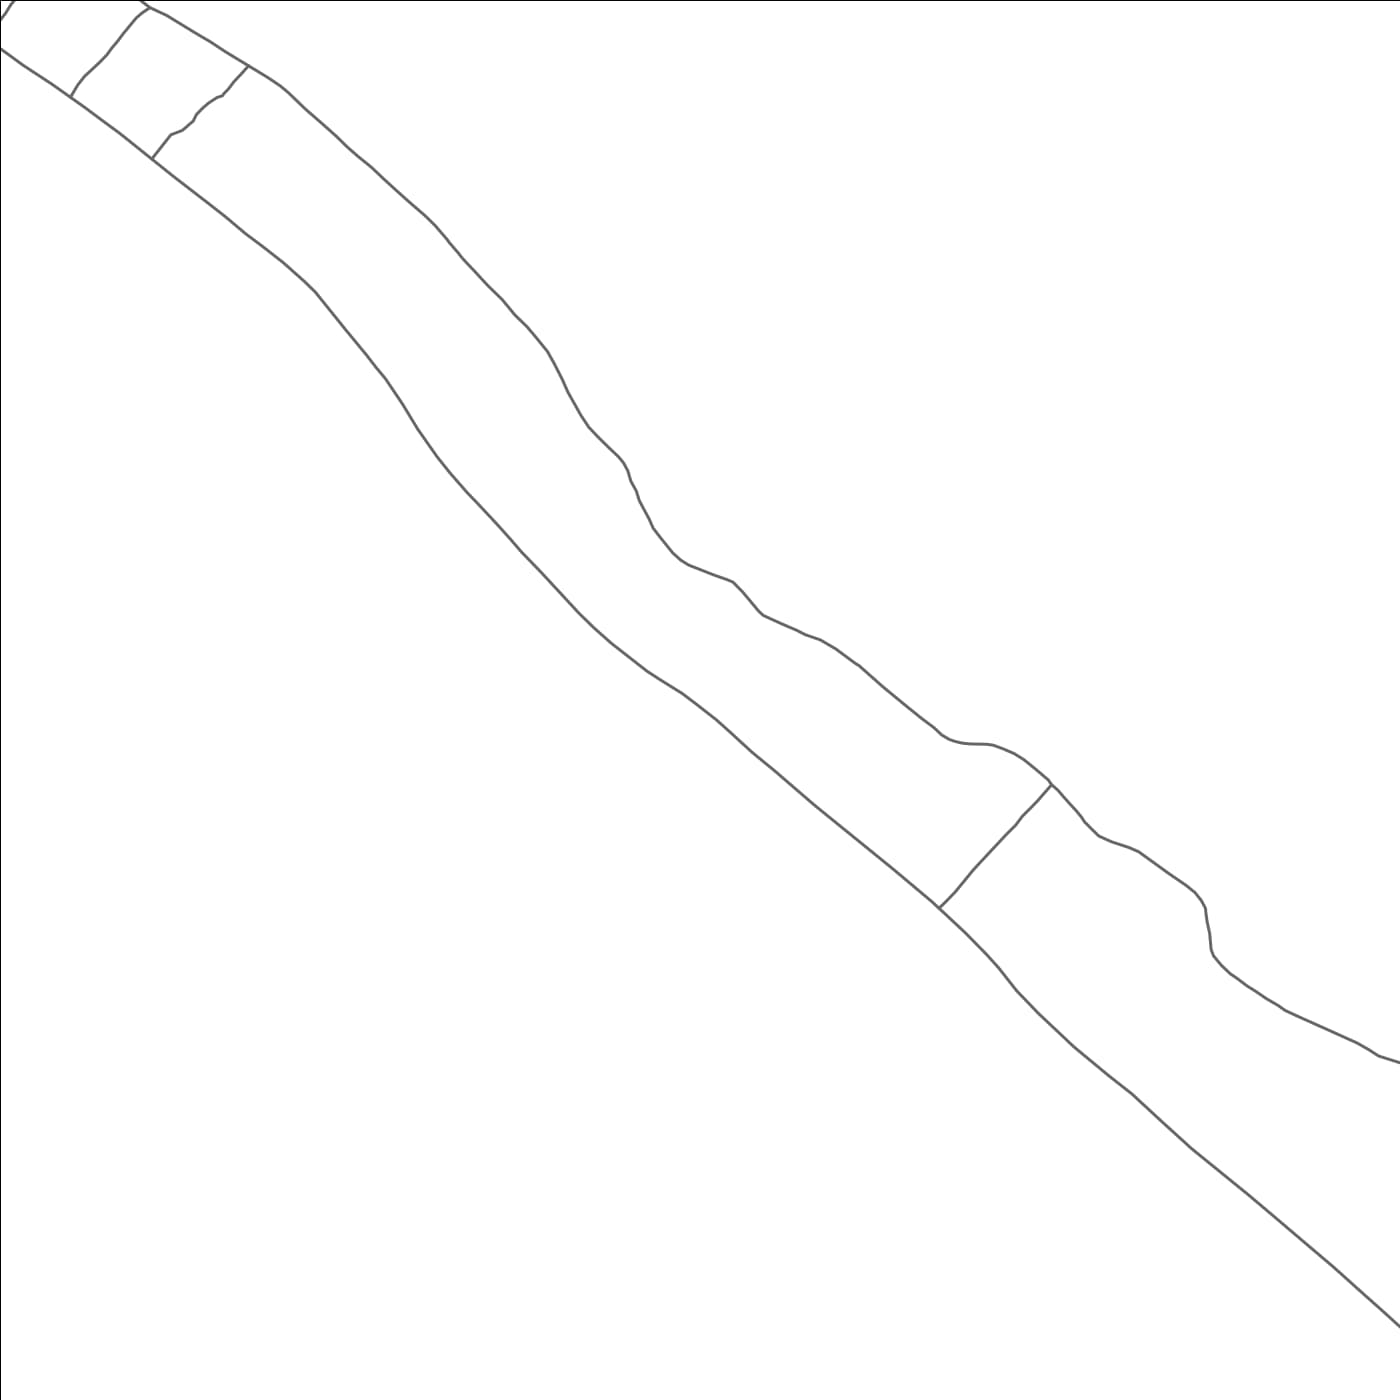 ROAD MAP OF TEKATIRIRAKE, KIRIBATI BY MAPBAKES